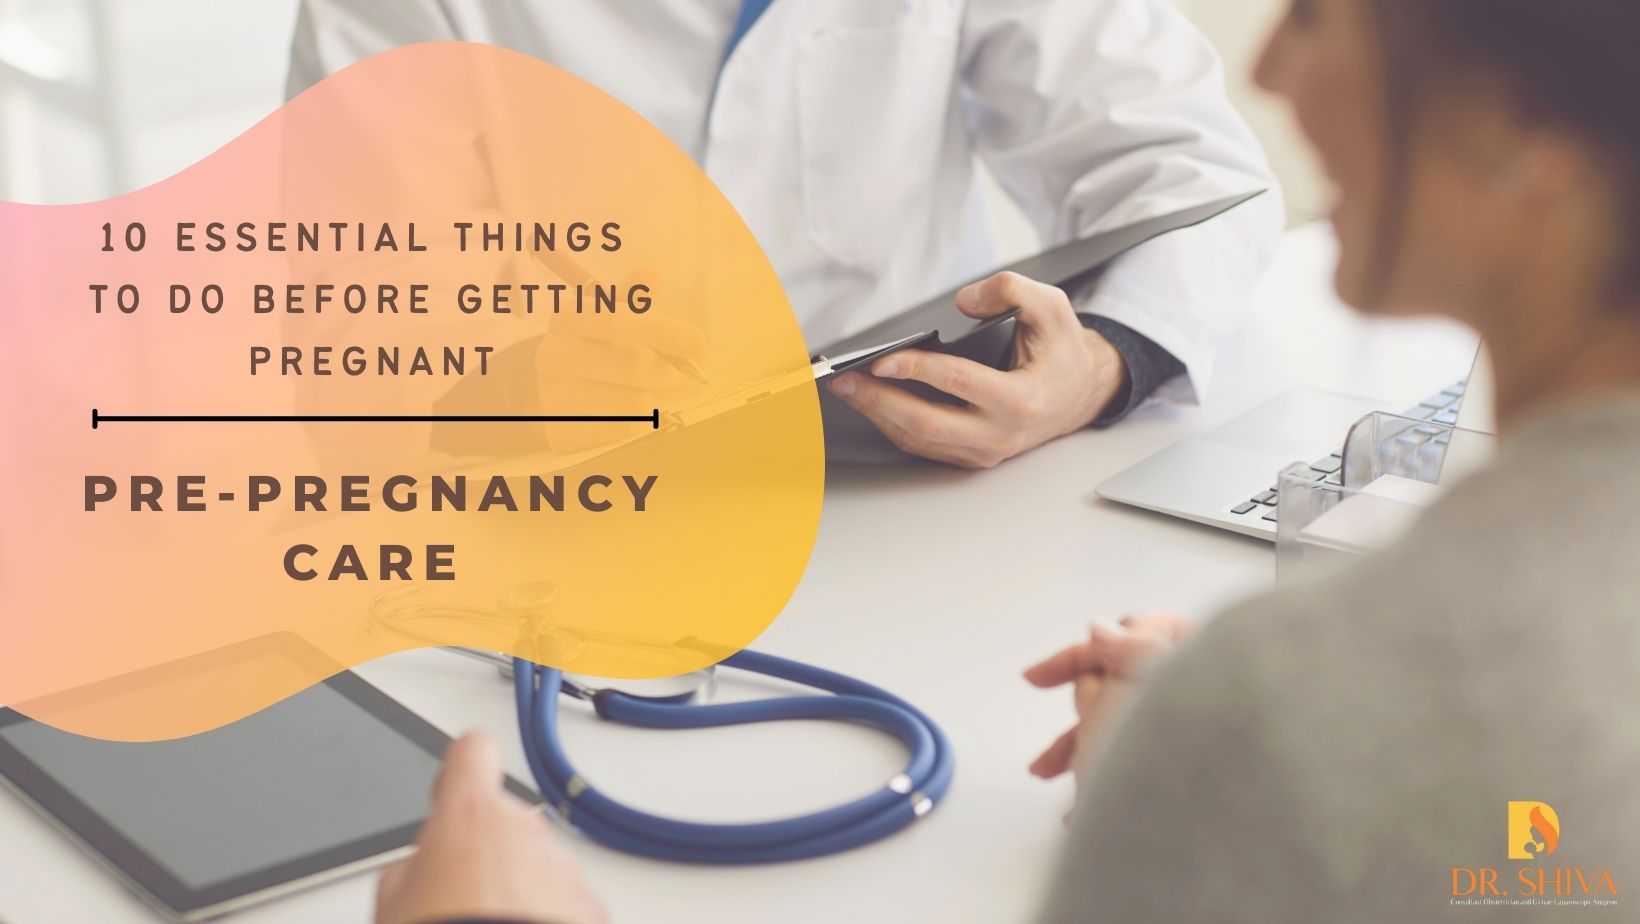 Pre-pregnancy care